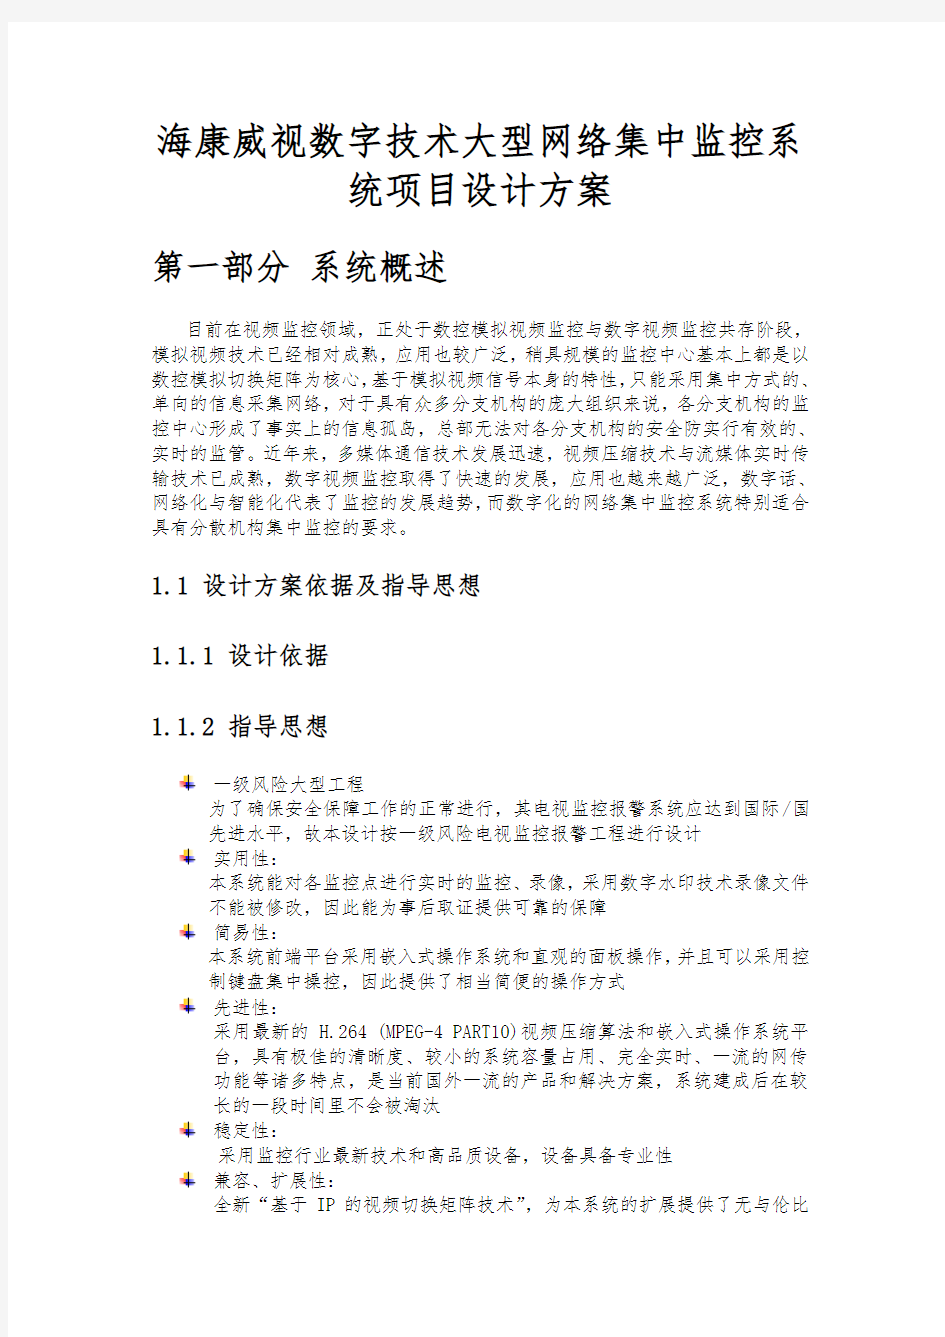 杭州海康威视数字技术有限公司大型网络集中监控系统项目设计方案